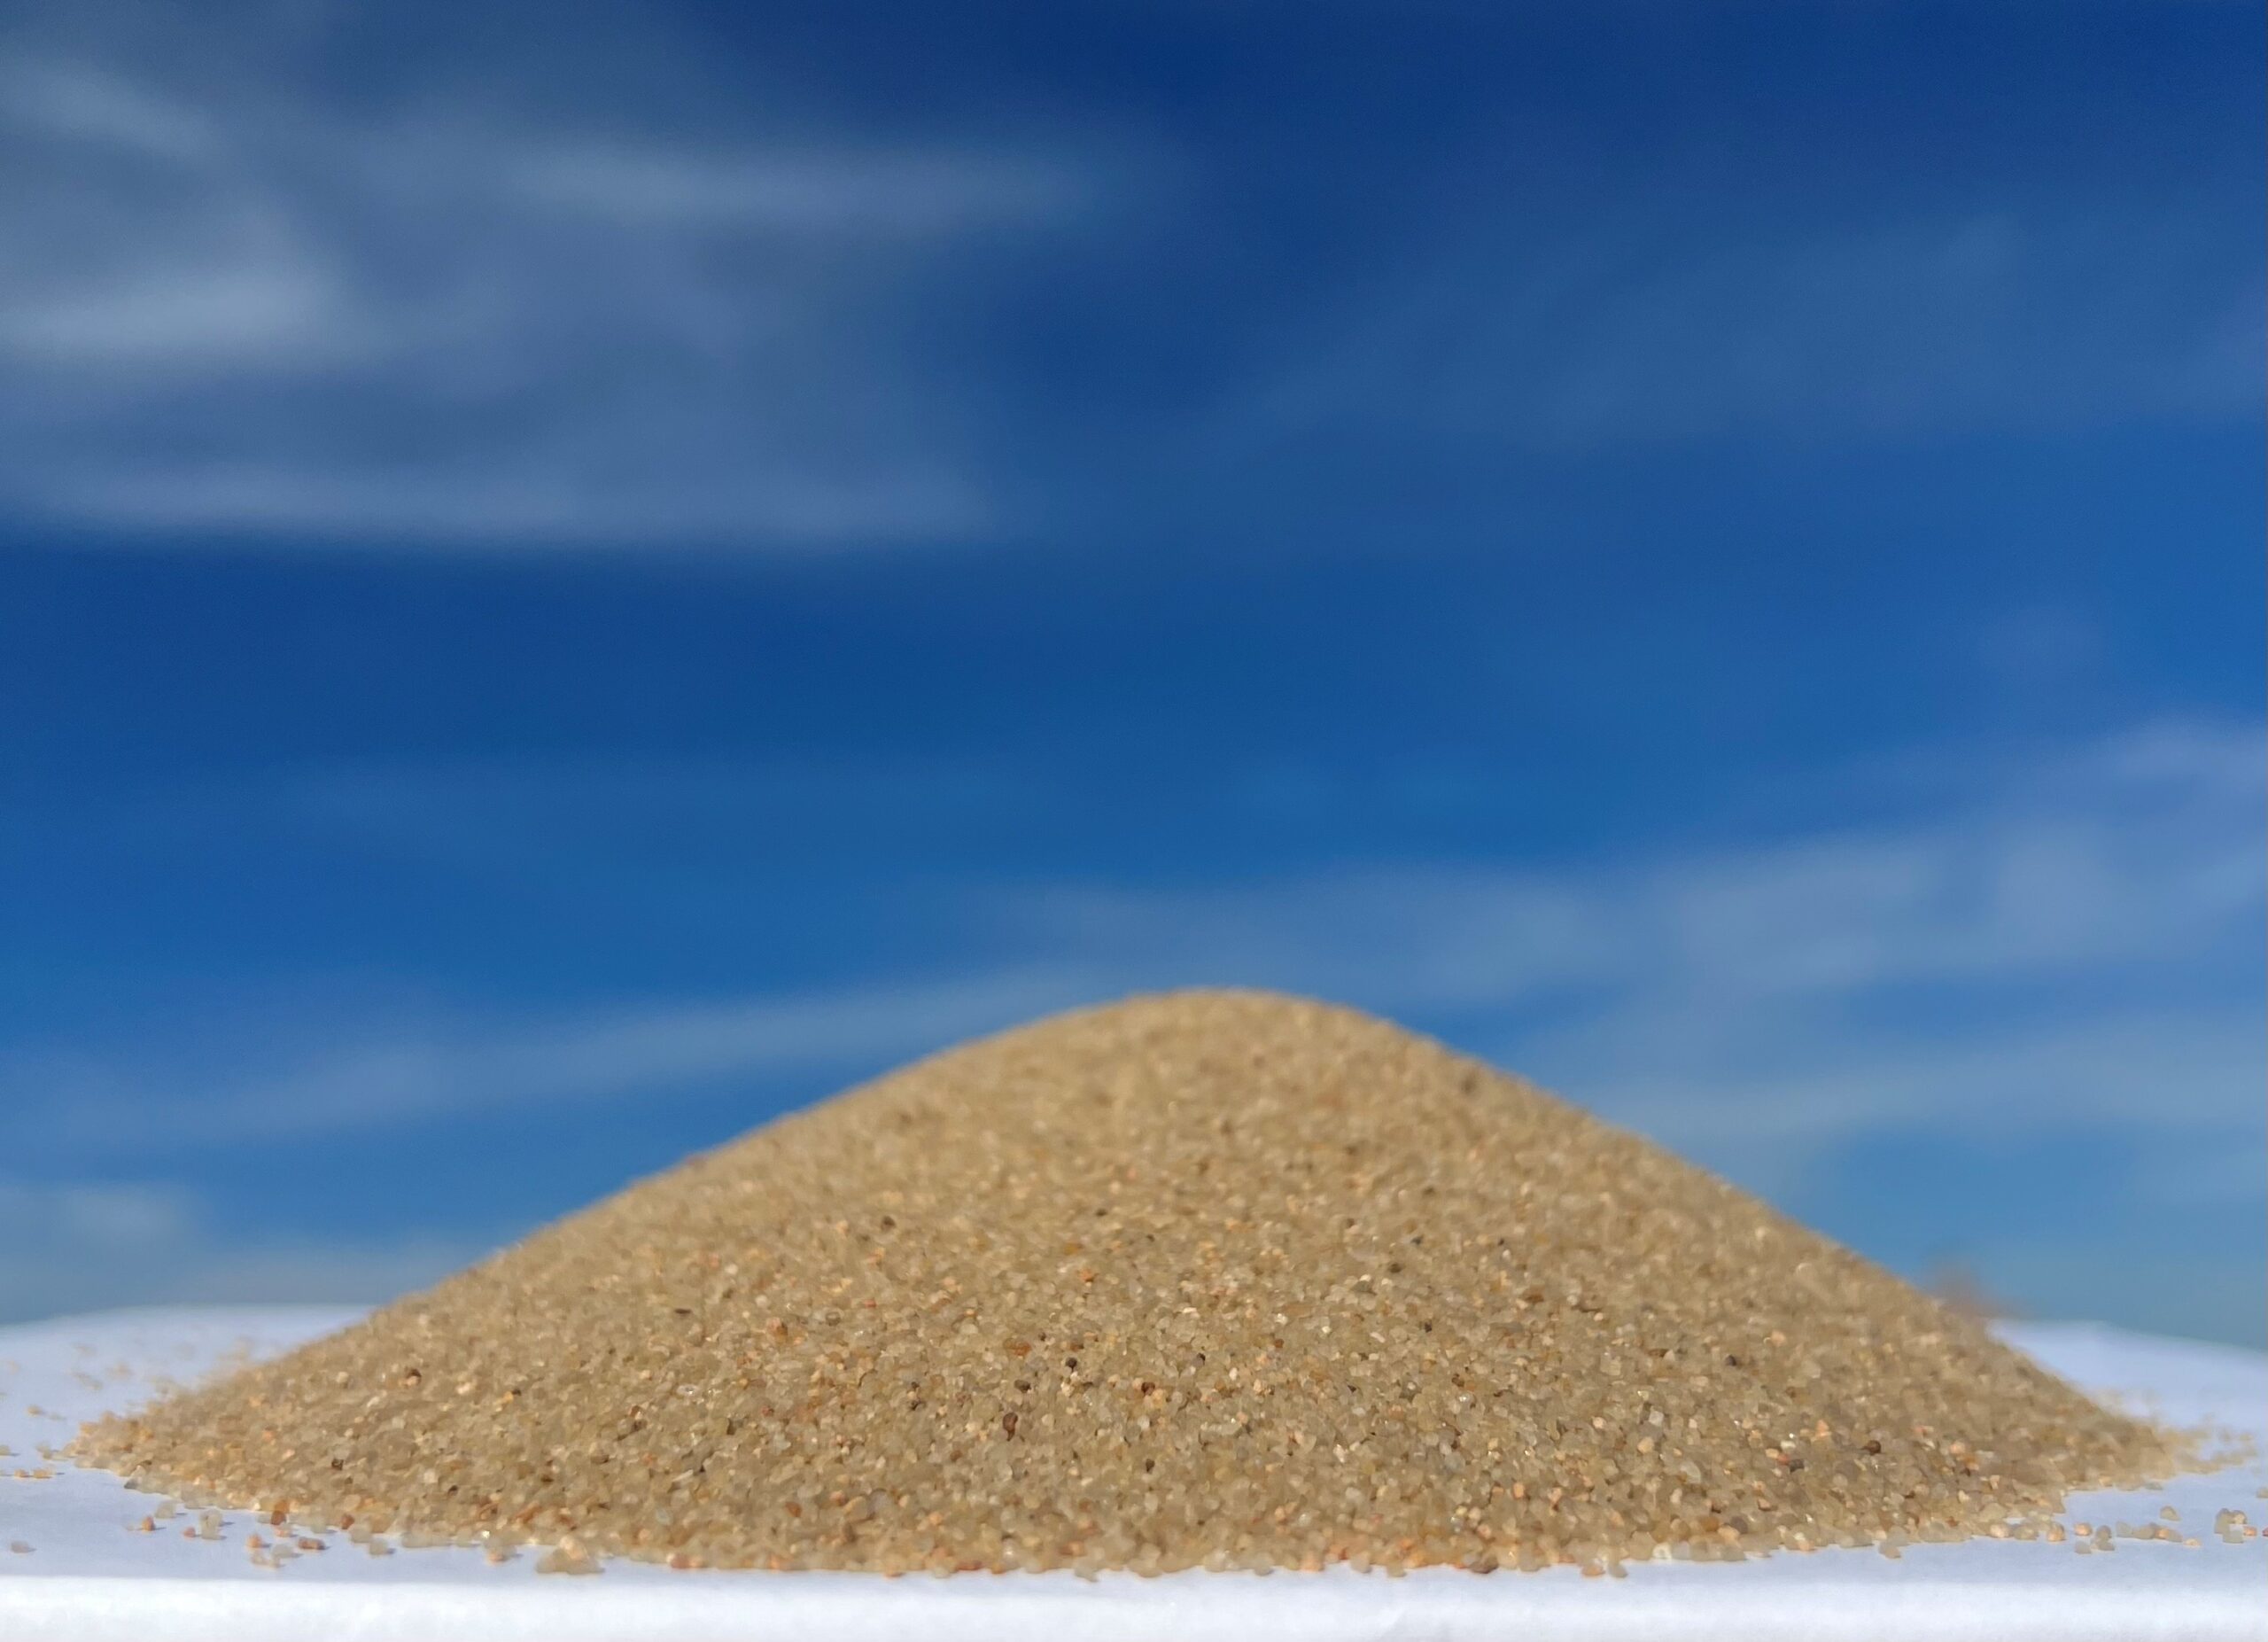 Silica sand uses